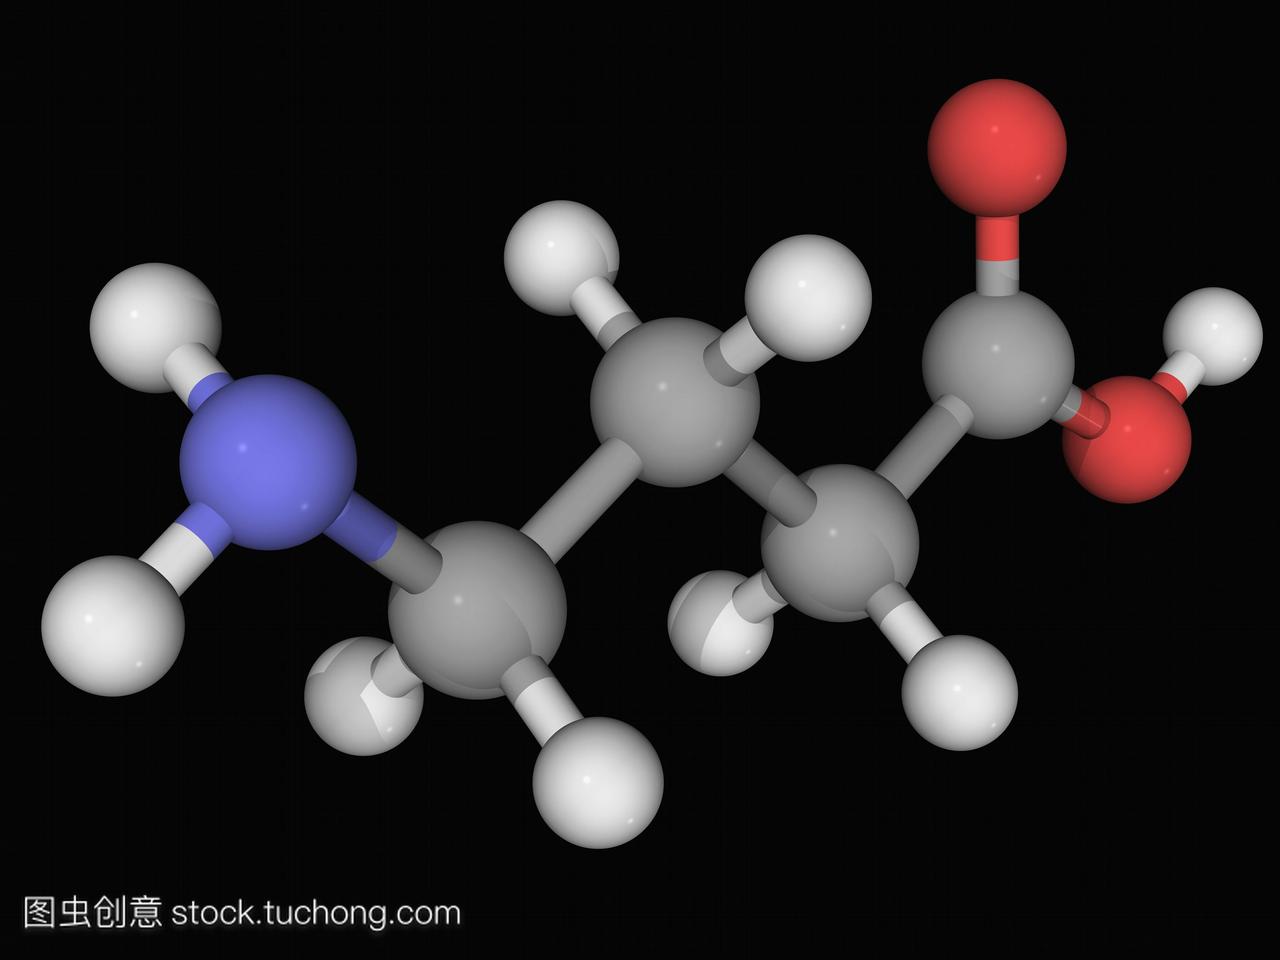 伽马氨基丁酸gaba,分子模型。哺乳动物中枢神